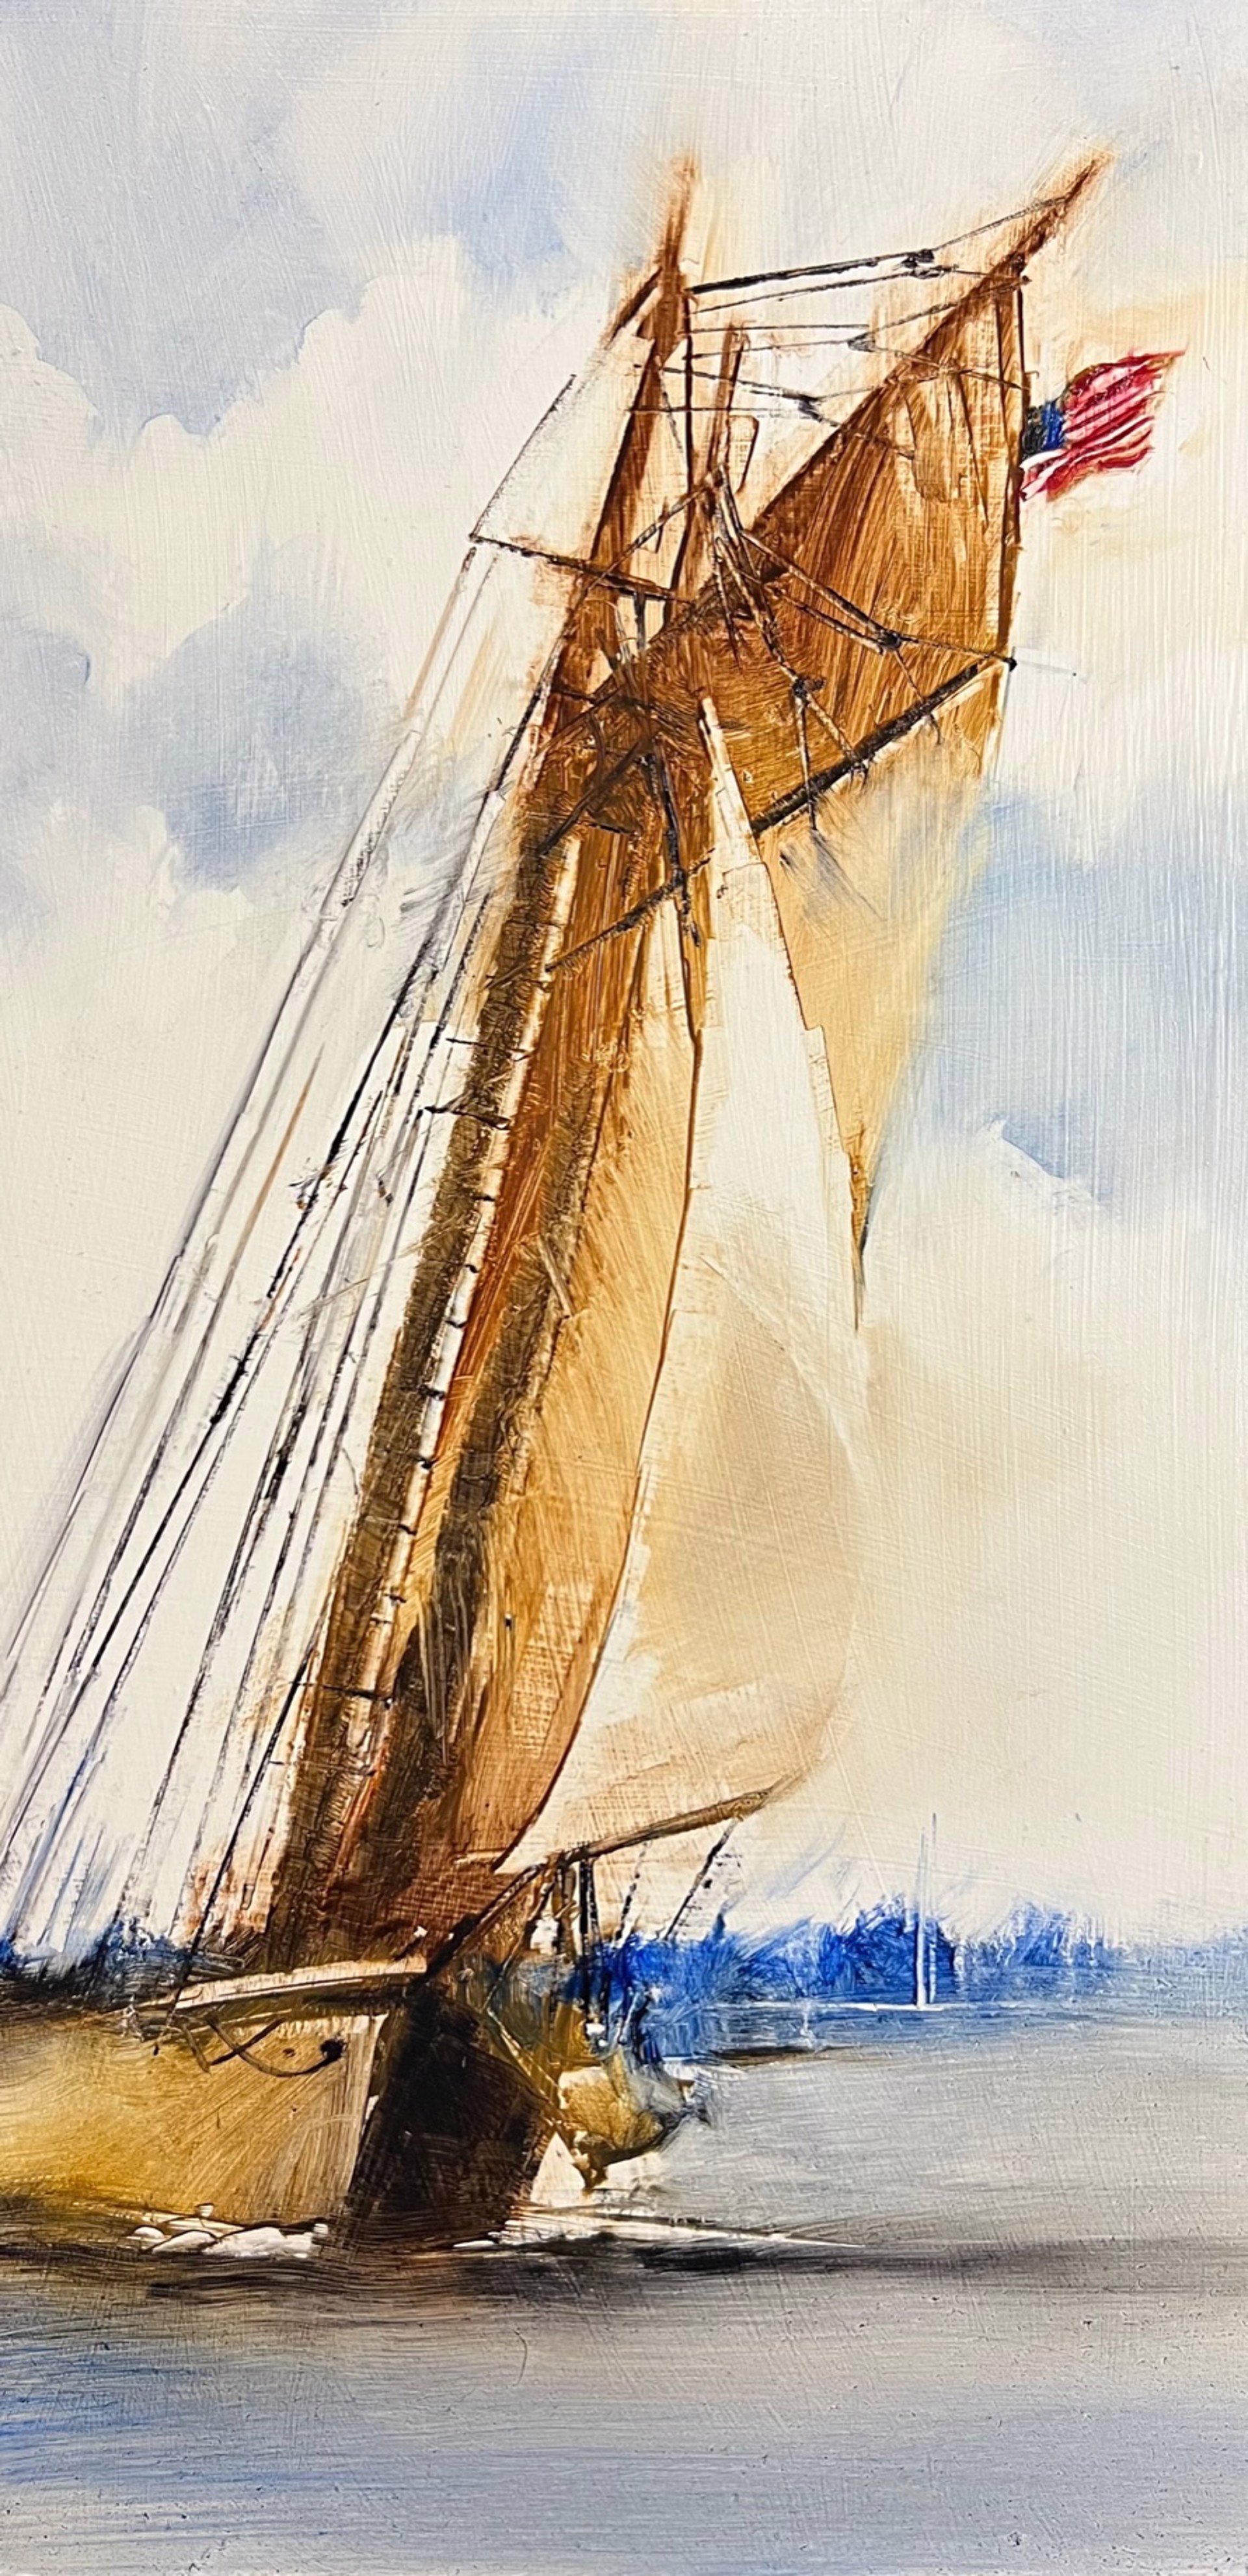 Day Sail by Beth Bathe